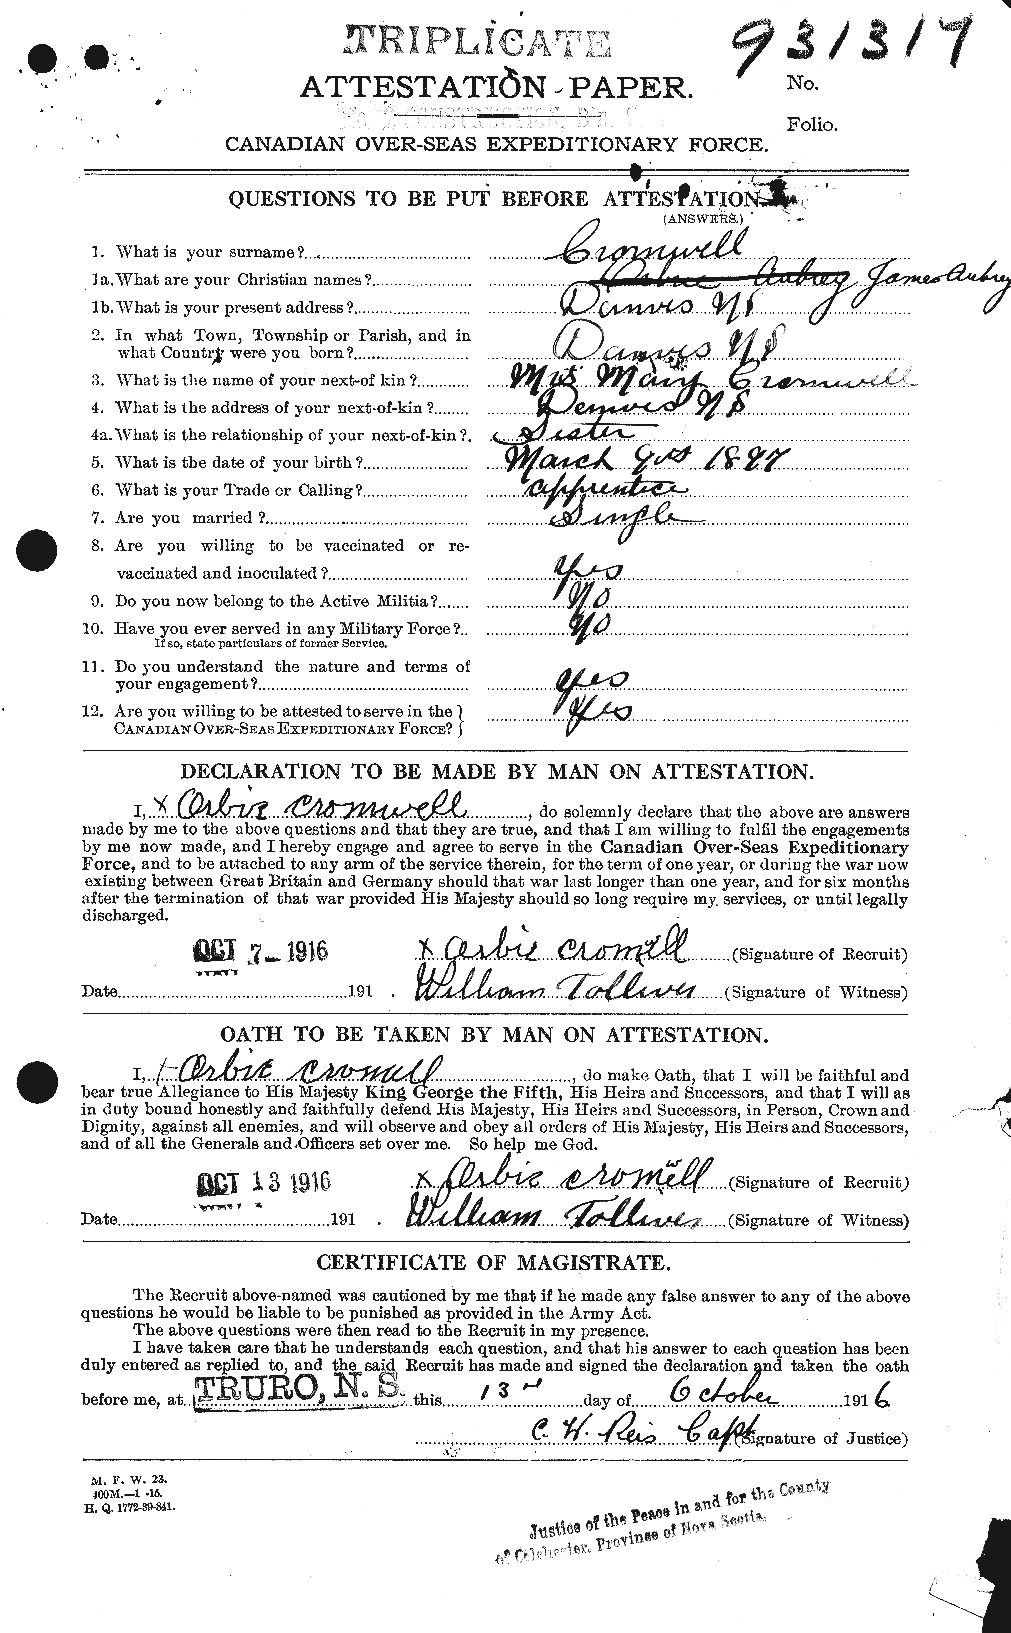 Dossiers du Personnel de la Première Guerre mondiale - CEC 064925a